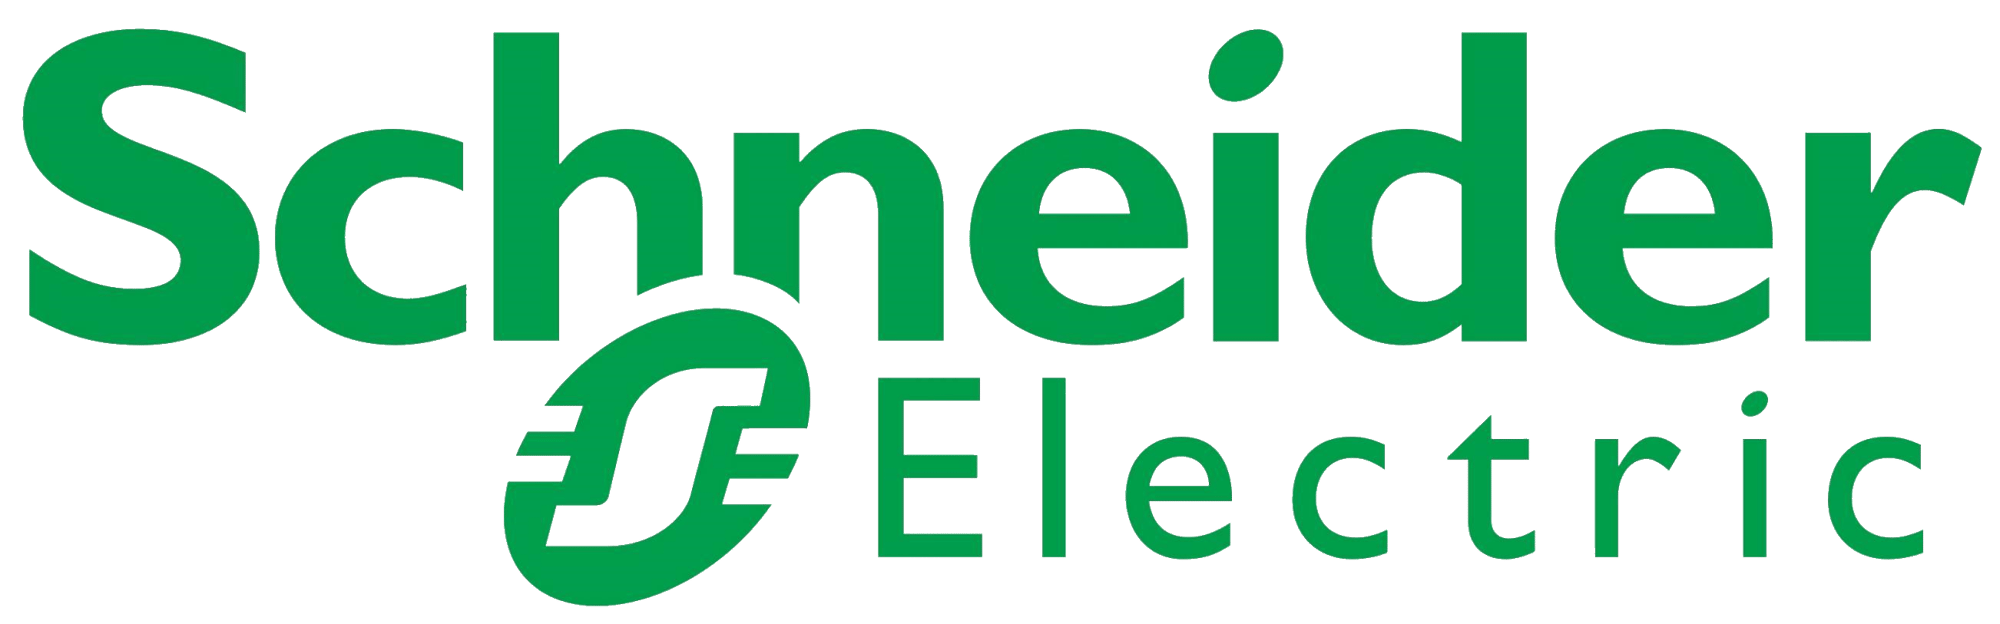 Schneider-Electric-logo-jpg--1